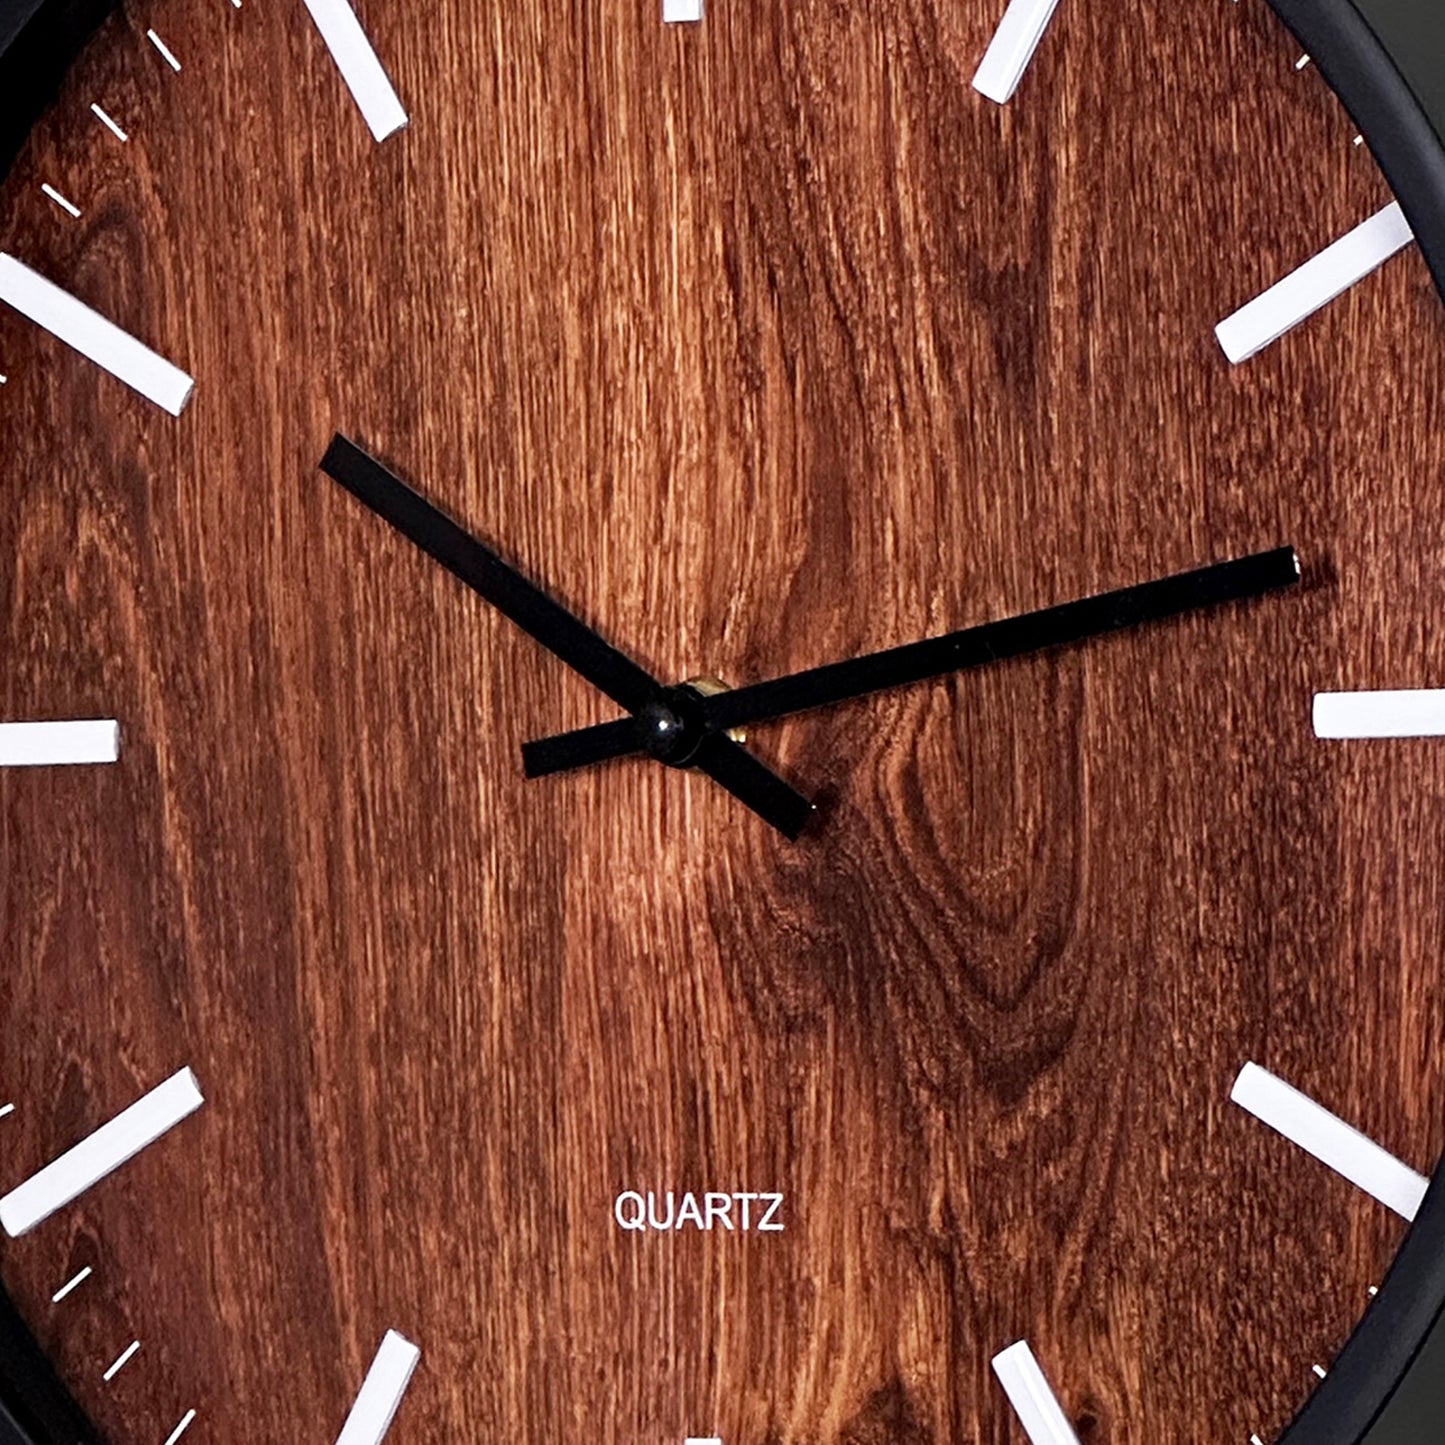 Dark Wood Look Wall Clock